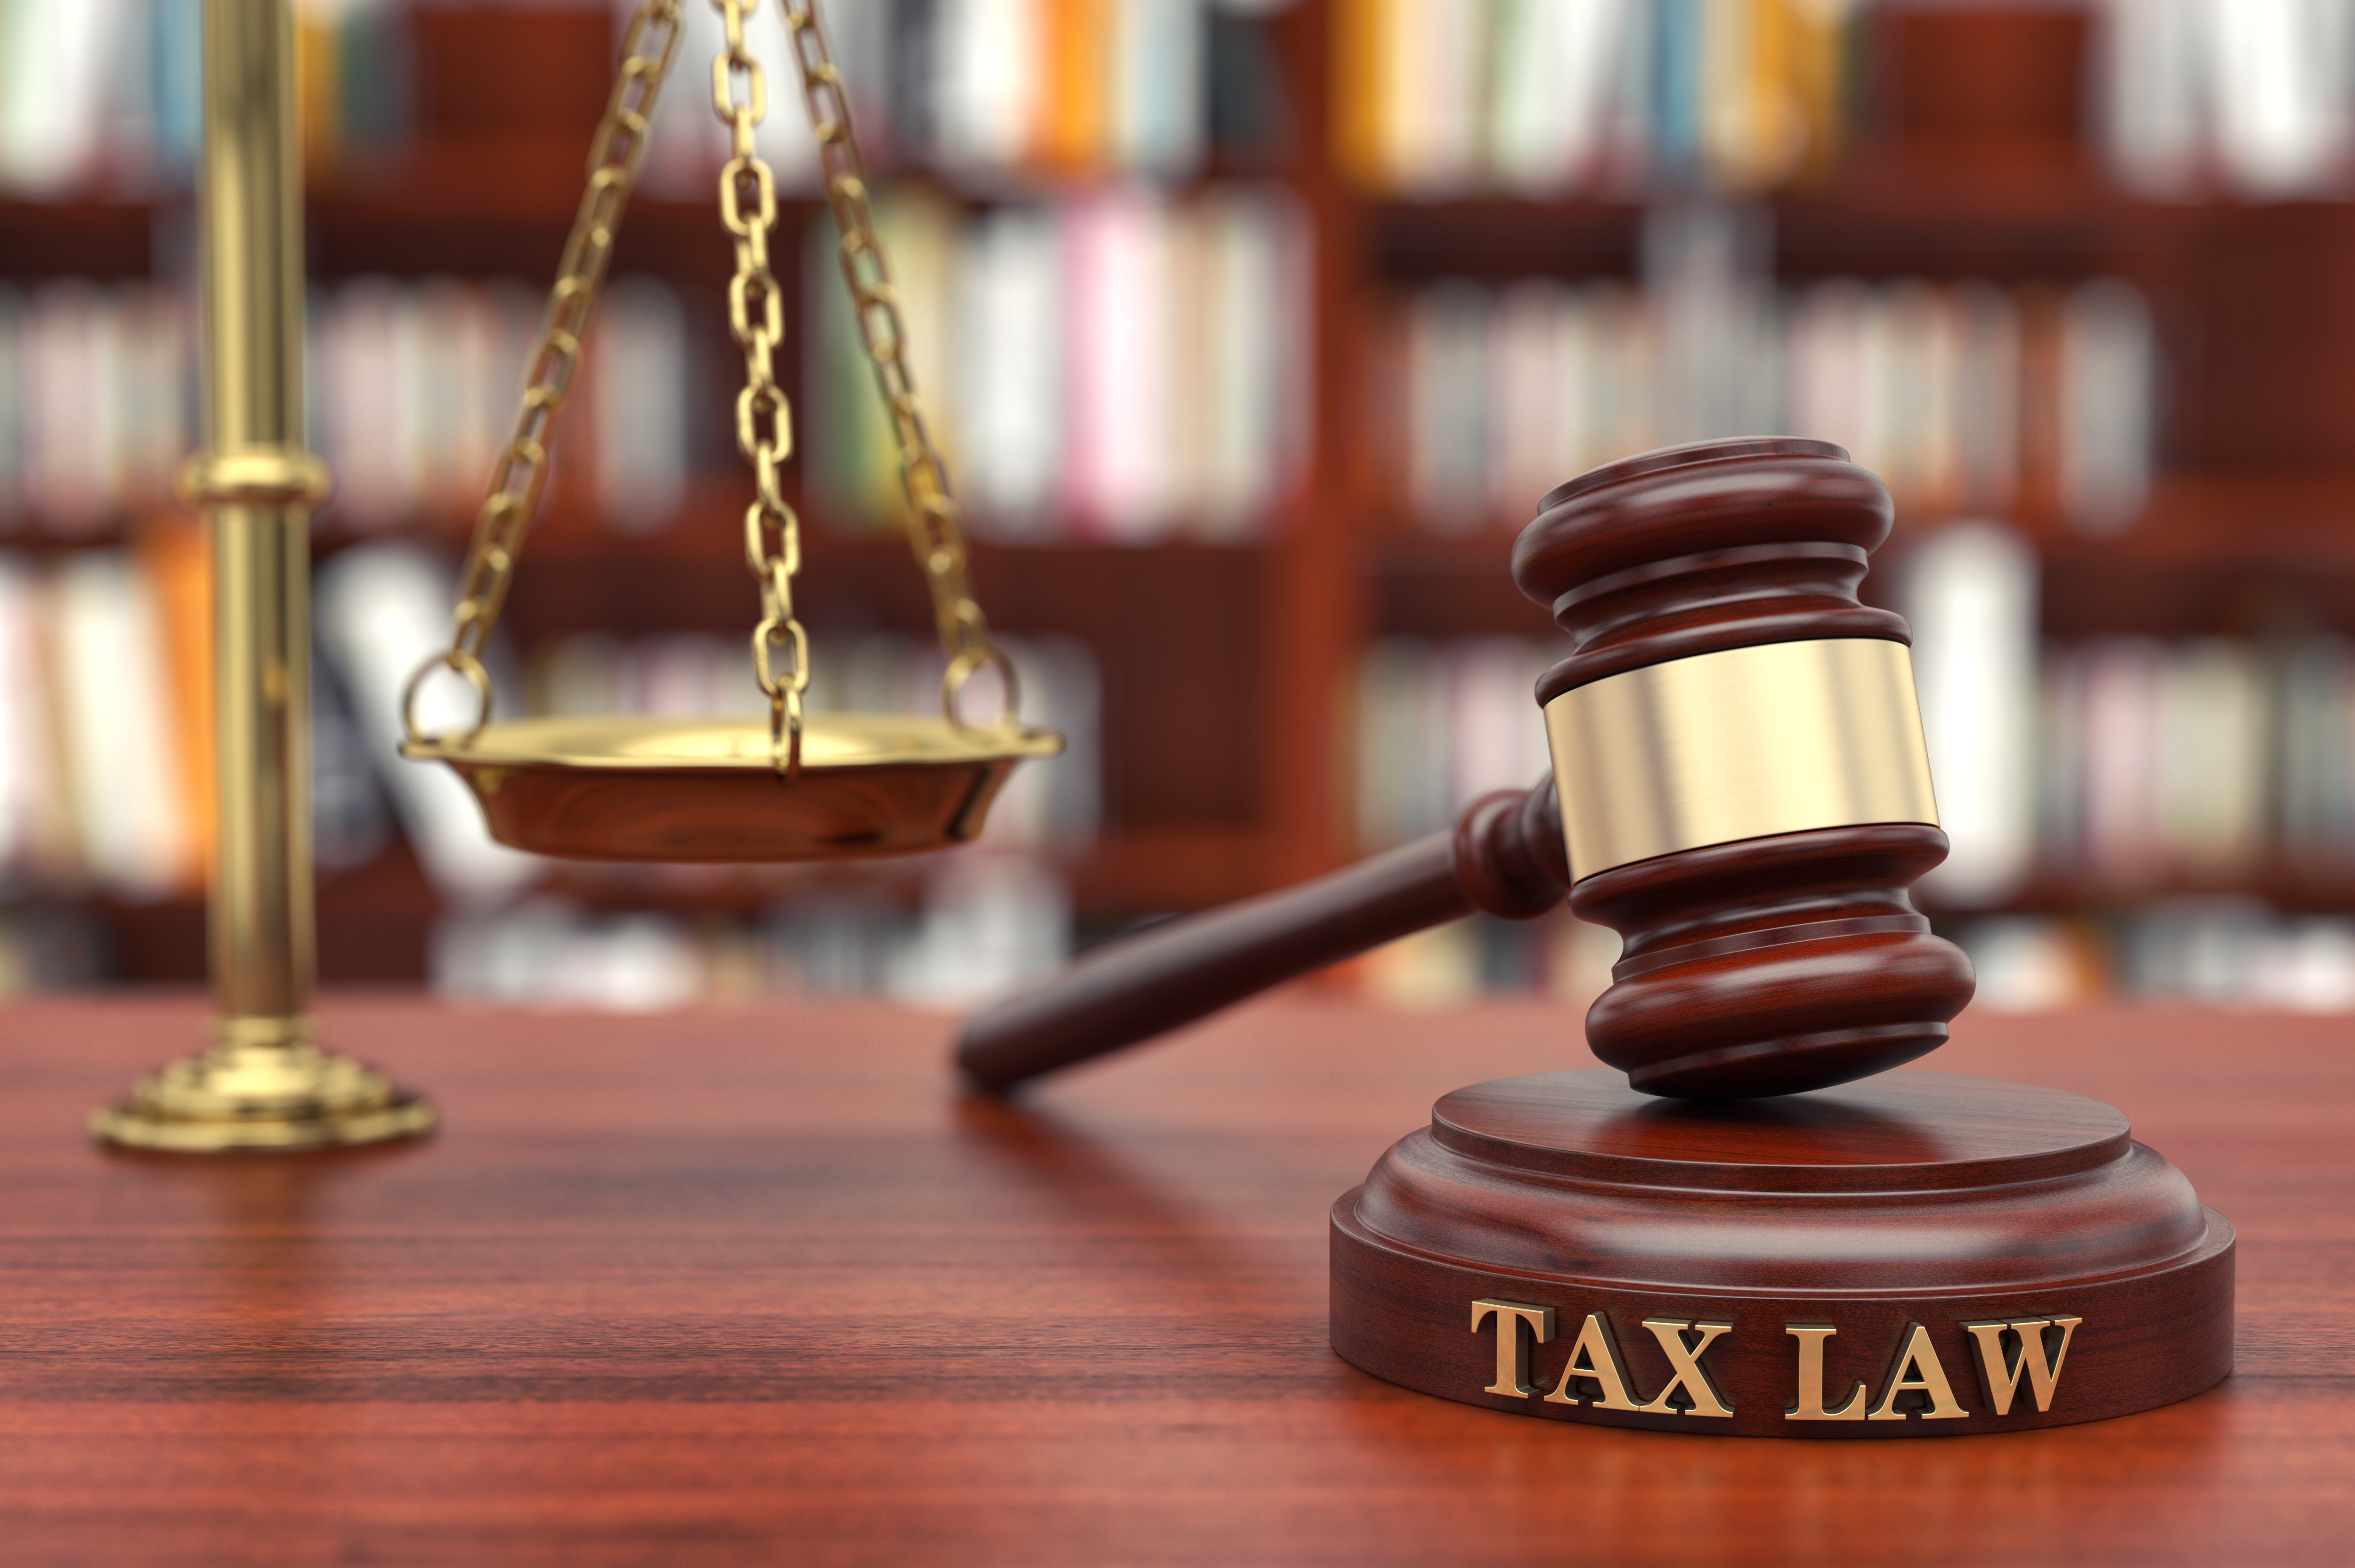 tax-law